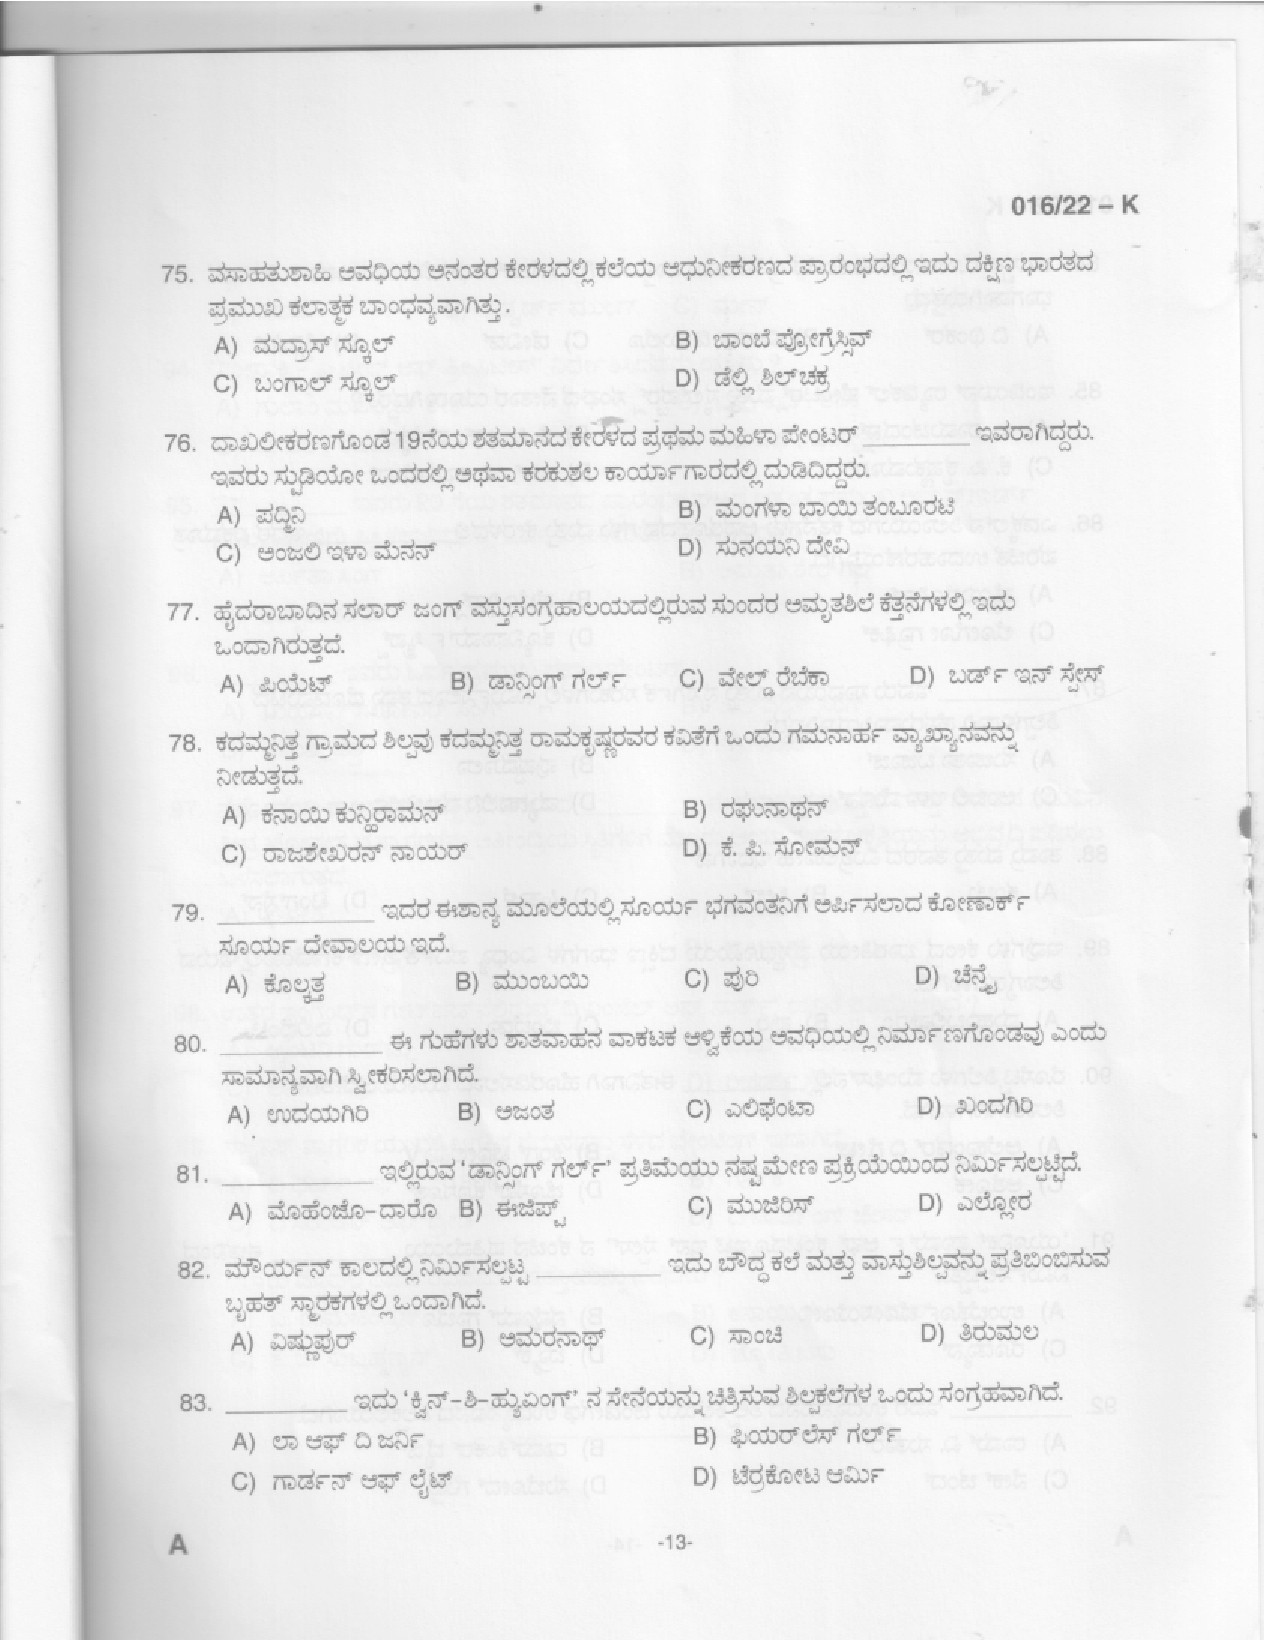 KPSC Drawing Teacher High School Kannada Exam 2022 Code 0162022 11